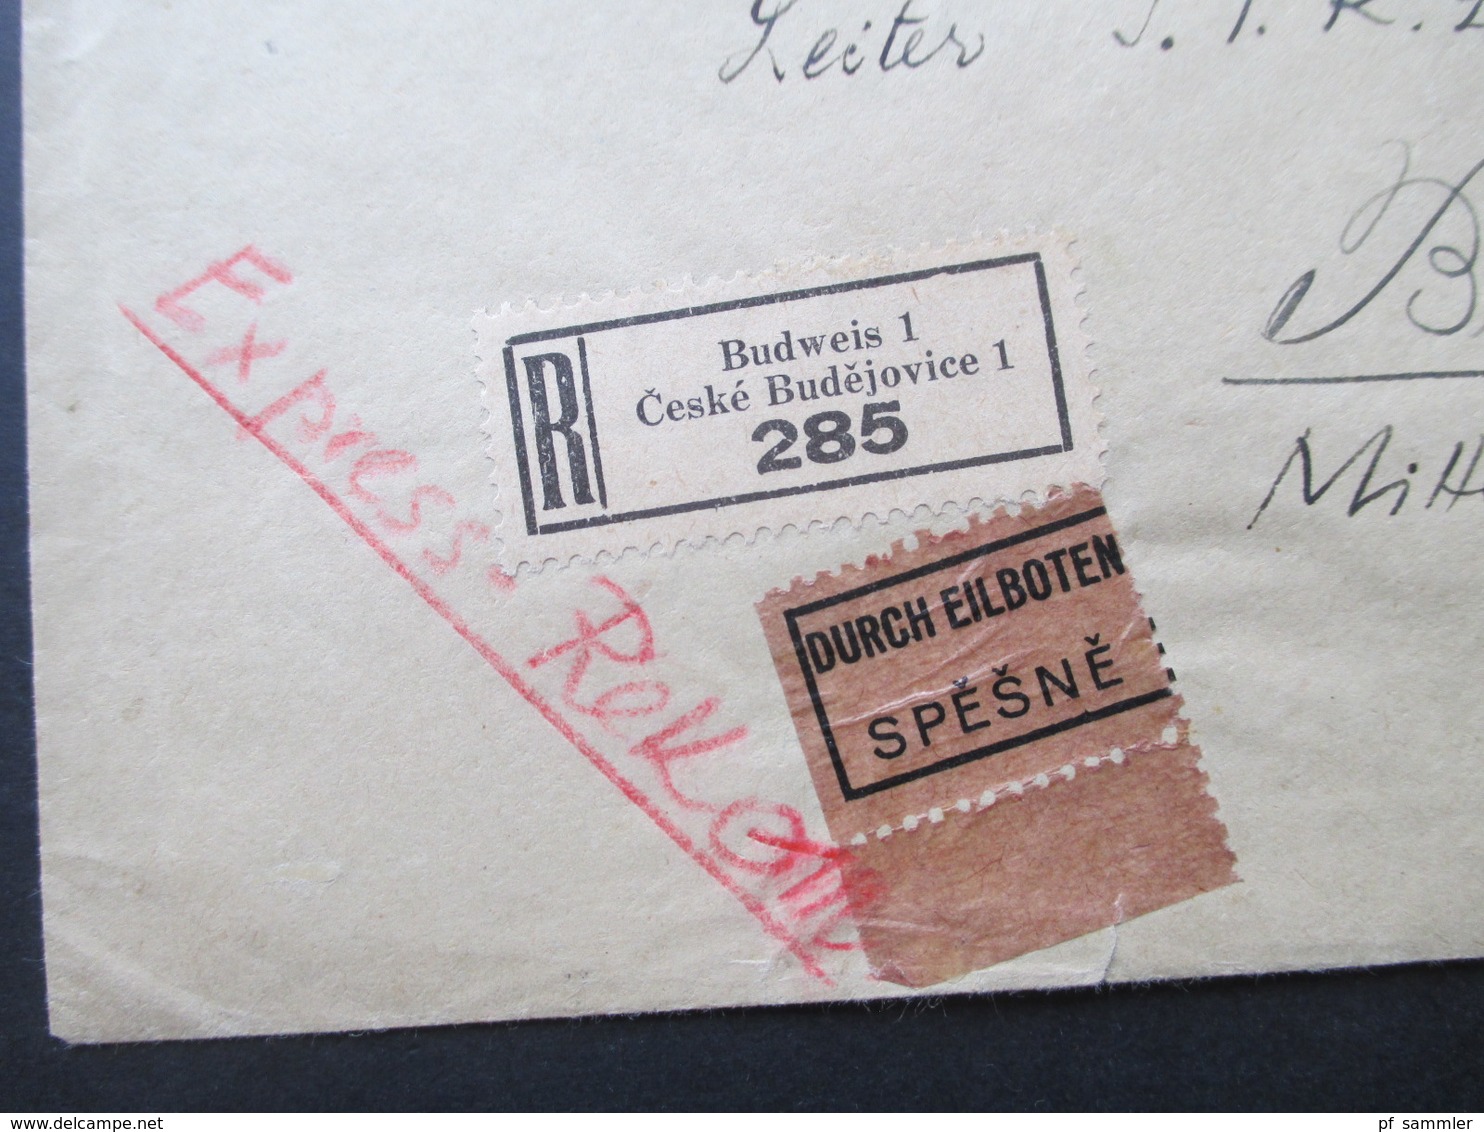 Böhmen Und Mähren 1942 MiF Einschreiben / Durch Eilboten Spesne Zweisprachiger R-Zettel Budweis 1 Ceske Budejovice 1 - Storia Postale